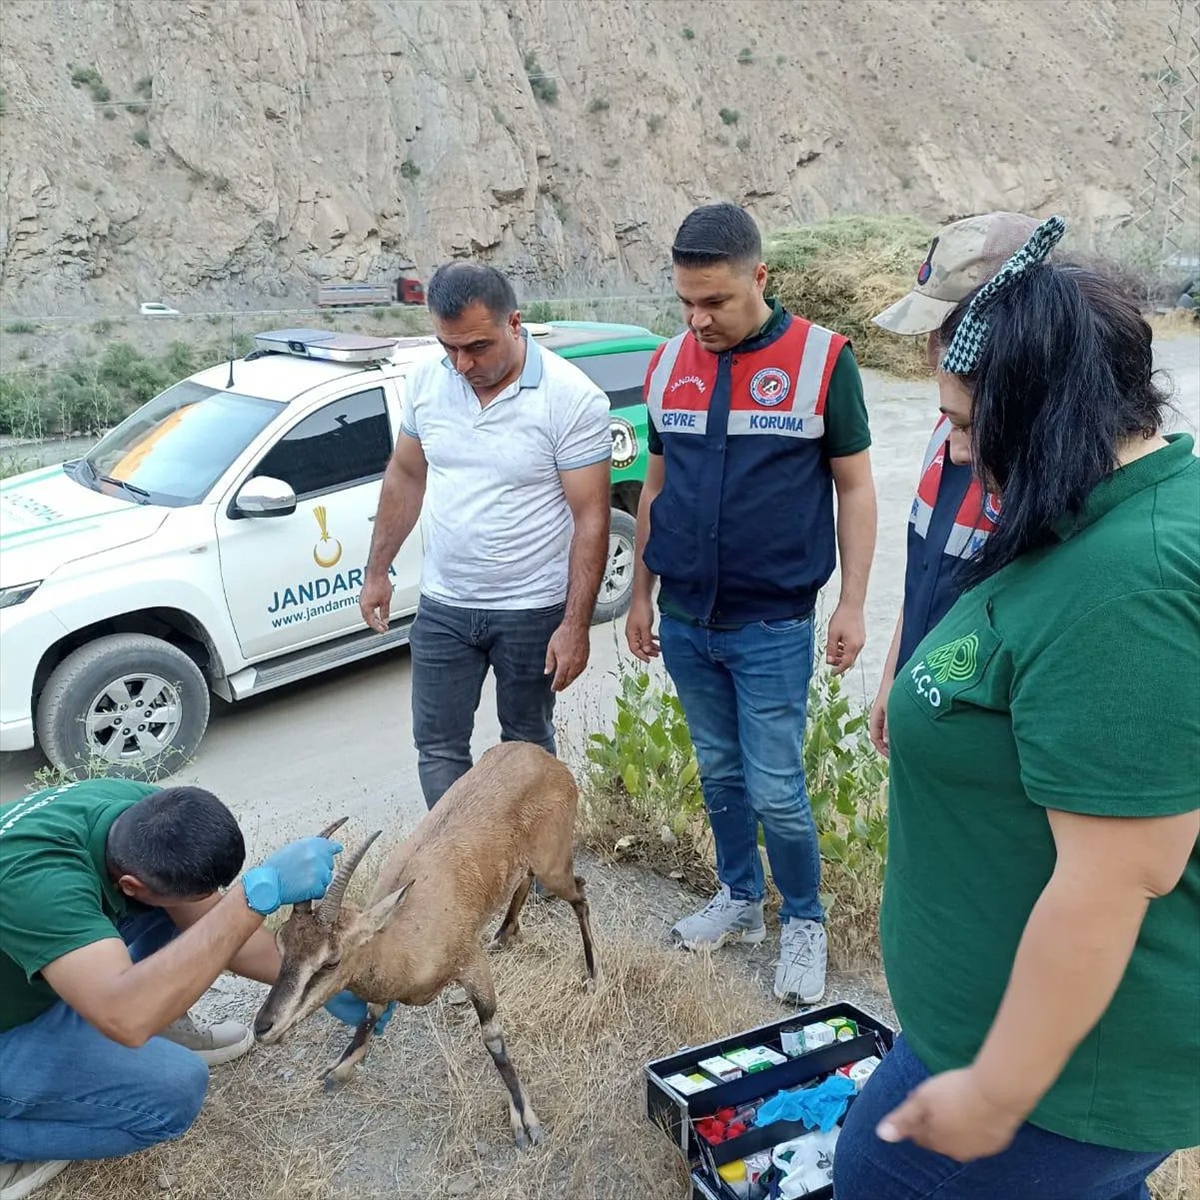 Hakkari'de bitkin halde bulunan dağ keçisi tedavi altına alındı